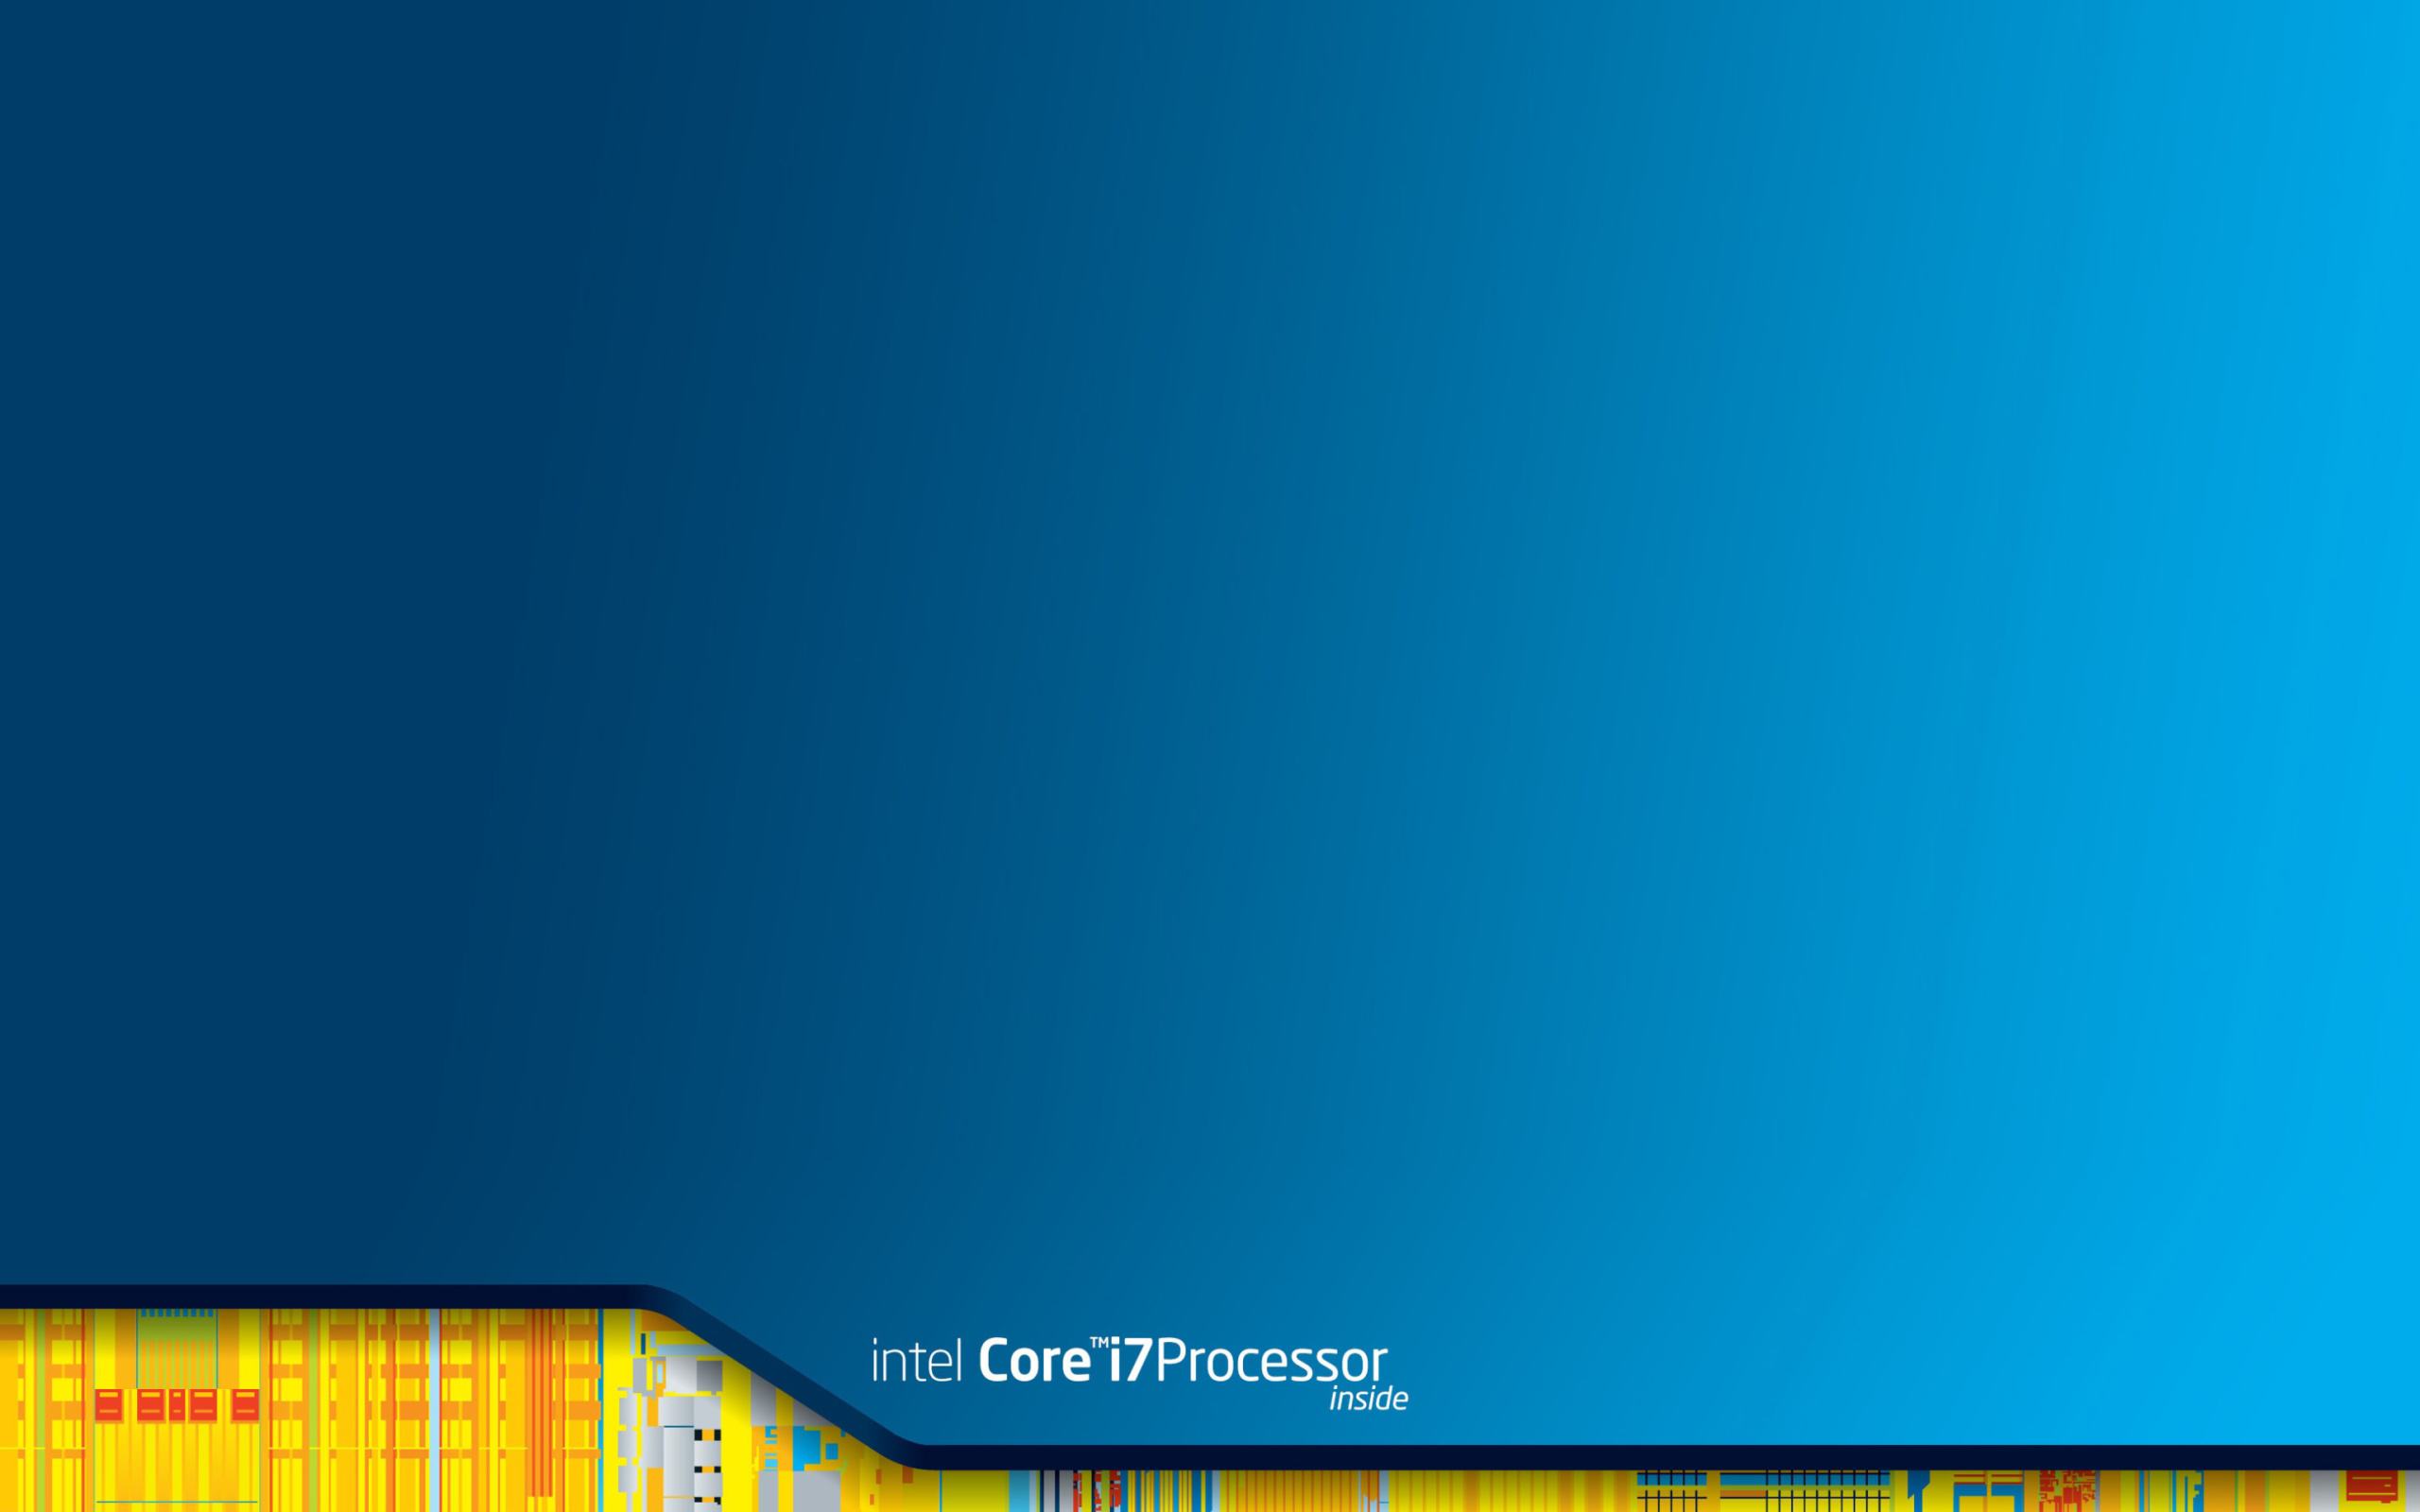 Intel Core i7 Processor wallpaper 2560x1600